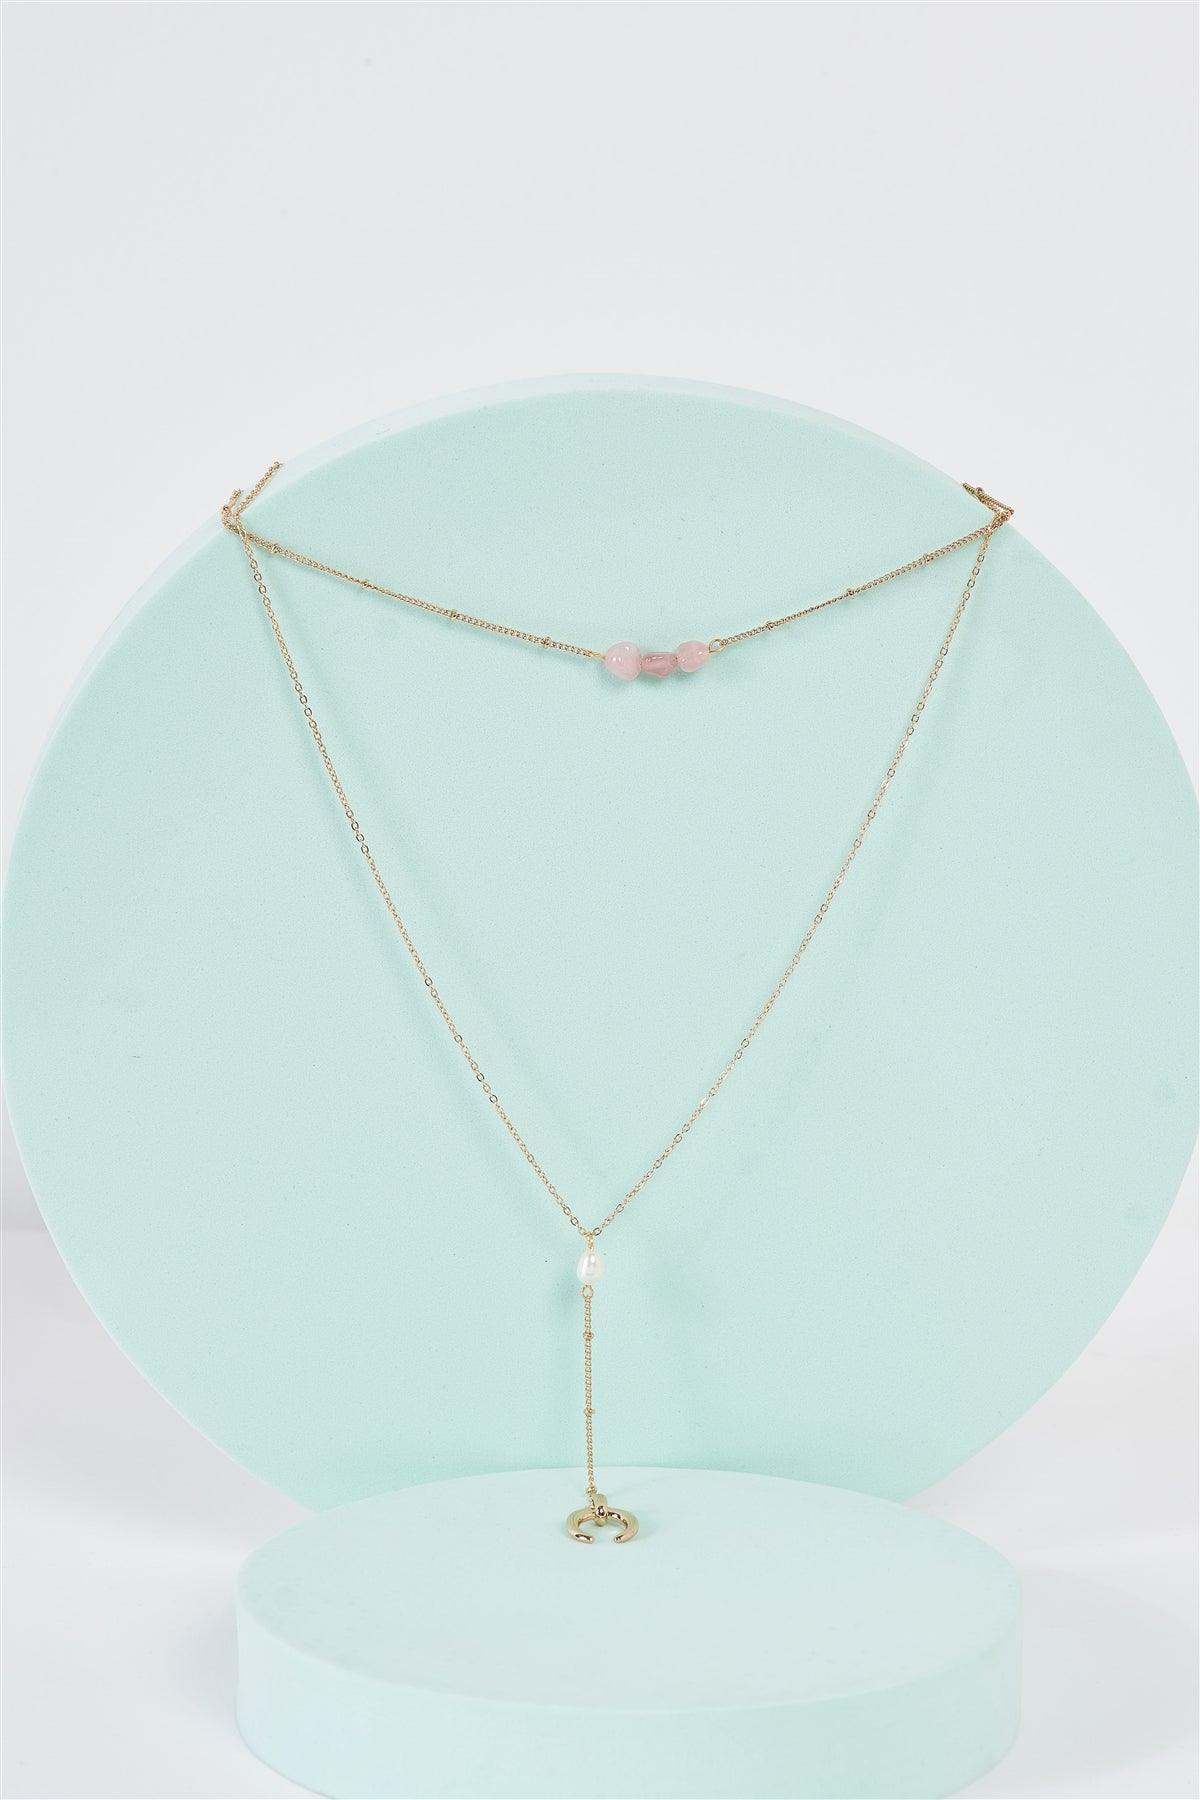 Gold & Pink Double Chain Rose Quartz Detail Crescent Moon Charm Pendant Necklace /3 Pieces